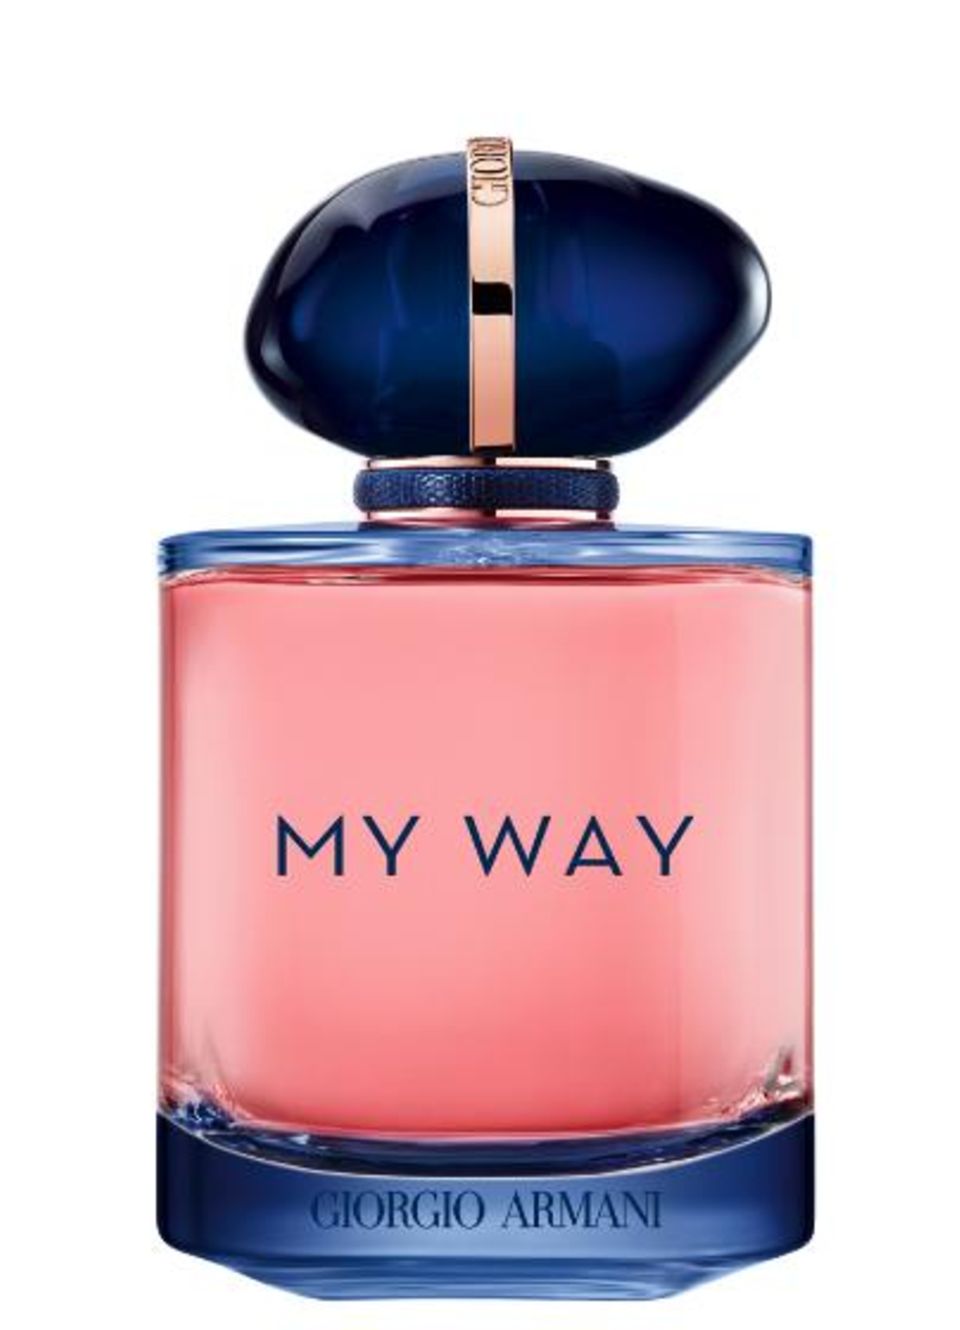 Freiheit und Weiblichkeit in einem Duft vereint. Mit einer floralen Herznote und holzigem Nachhall repräsentiert das Parfum "My Way Intense" von Armani die selbstbestimmte Frau und damit auch den Zeitgeist. Von Giorgio Armani, ca. 70 Euro.